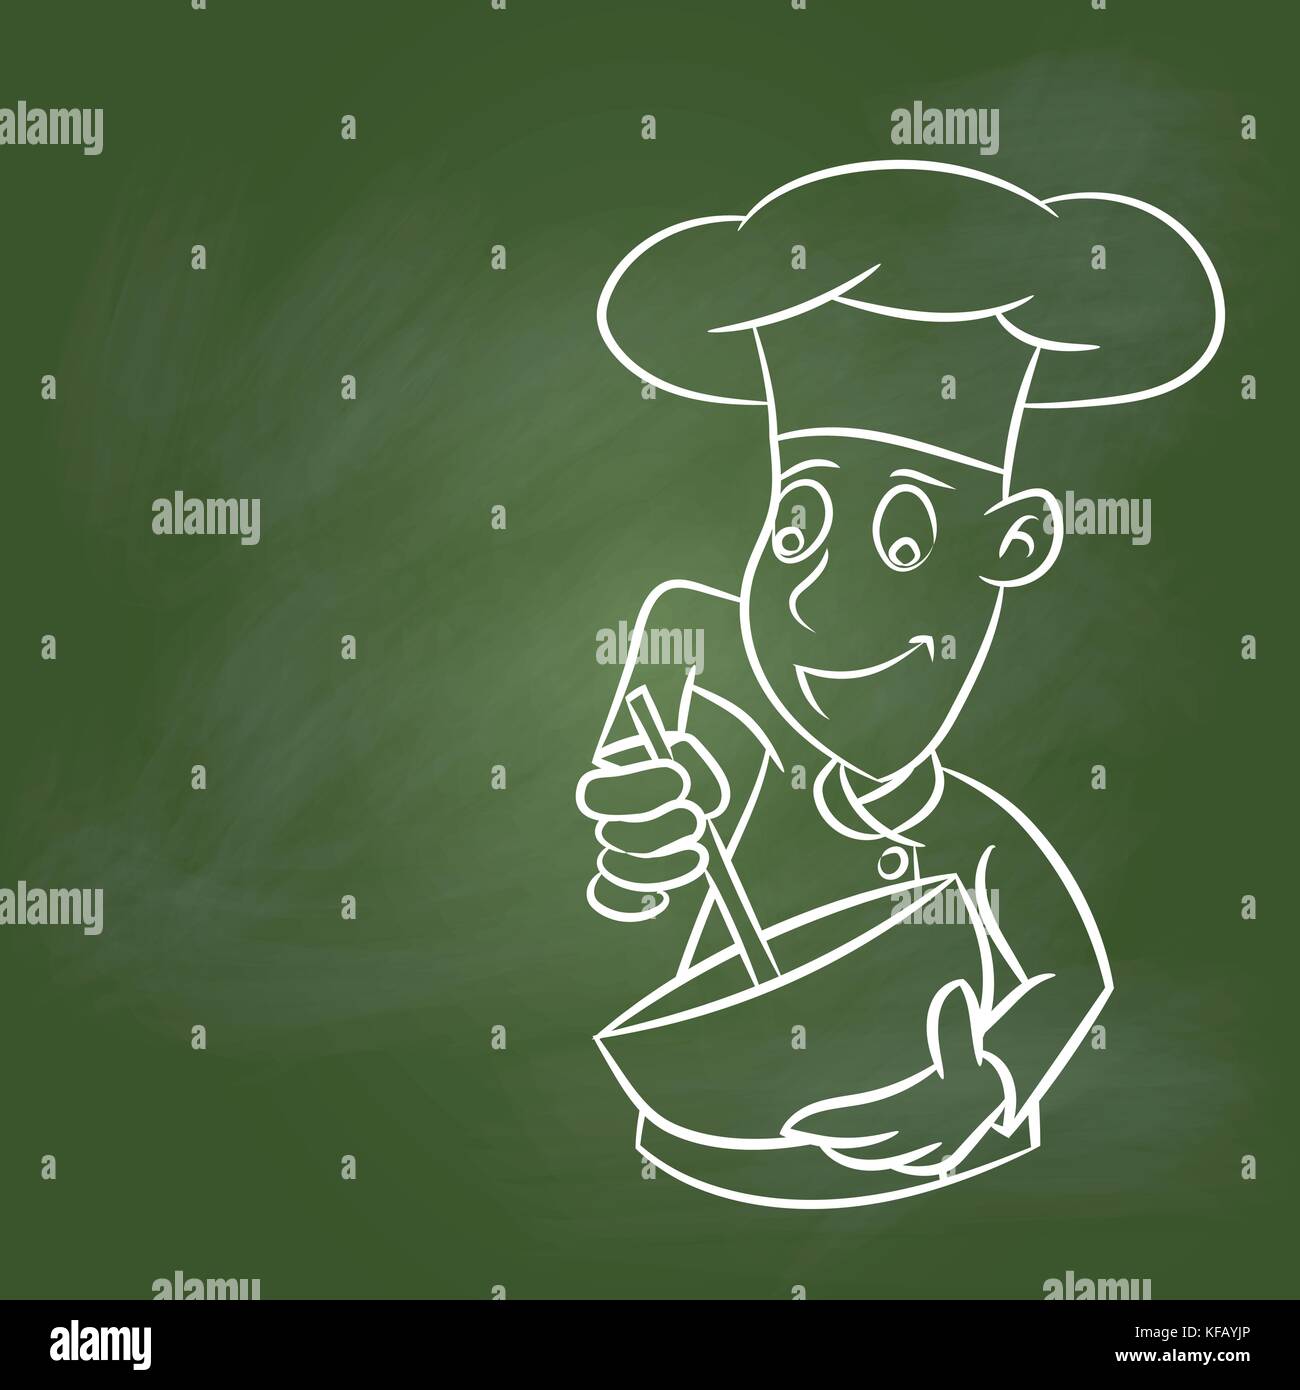 Disegno a mano chef cartoon sulla trama scheda verde. per il concetto di istruzione, illustrazione vettoriale, disegno con gesso su greenboard. Illustrazione Vettoriale